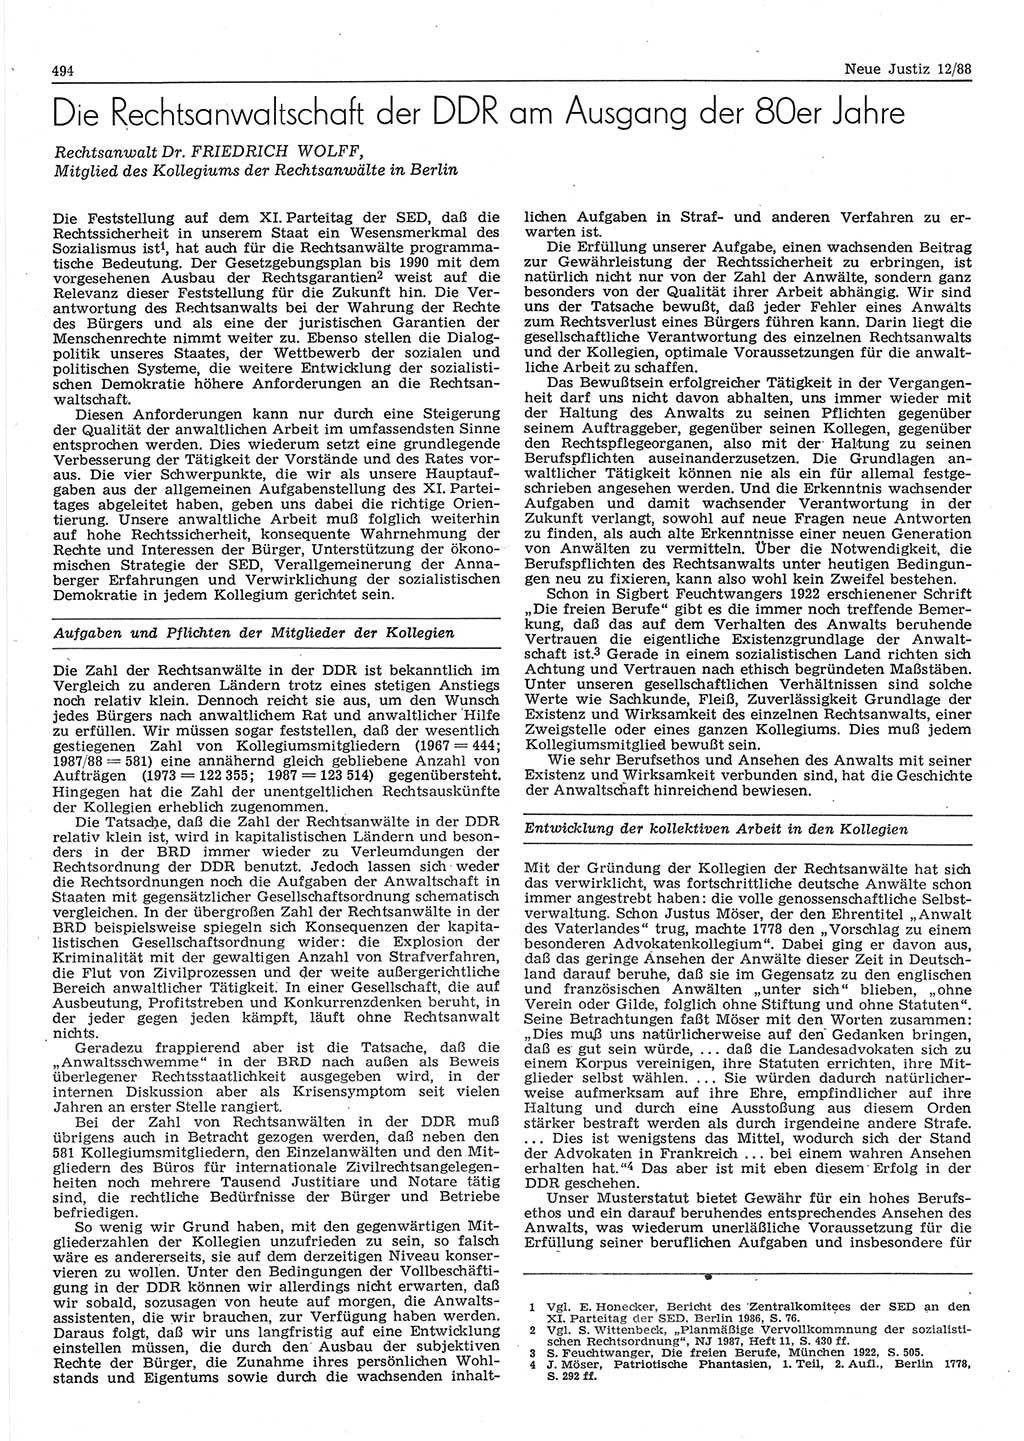 Neue Justiz (NJ), Zeitschrift für sozialistisches Recht und Gesetzlichkeit [Deutsche Demokratische Republik (DDR)], 42. Jahrgang 1988, Seite 494 (NJ DDR 1988, S. 494)